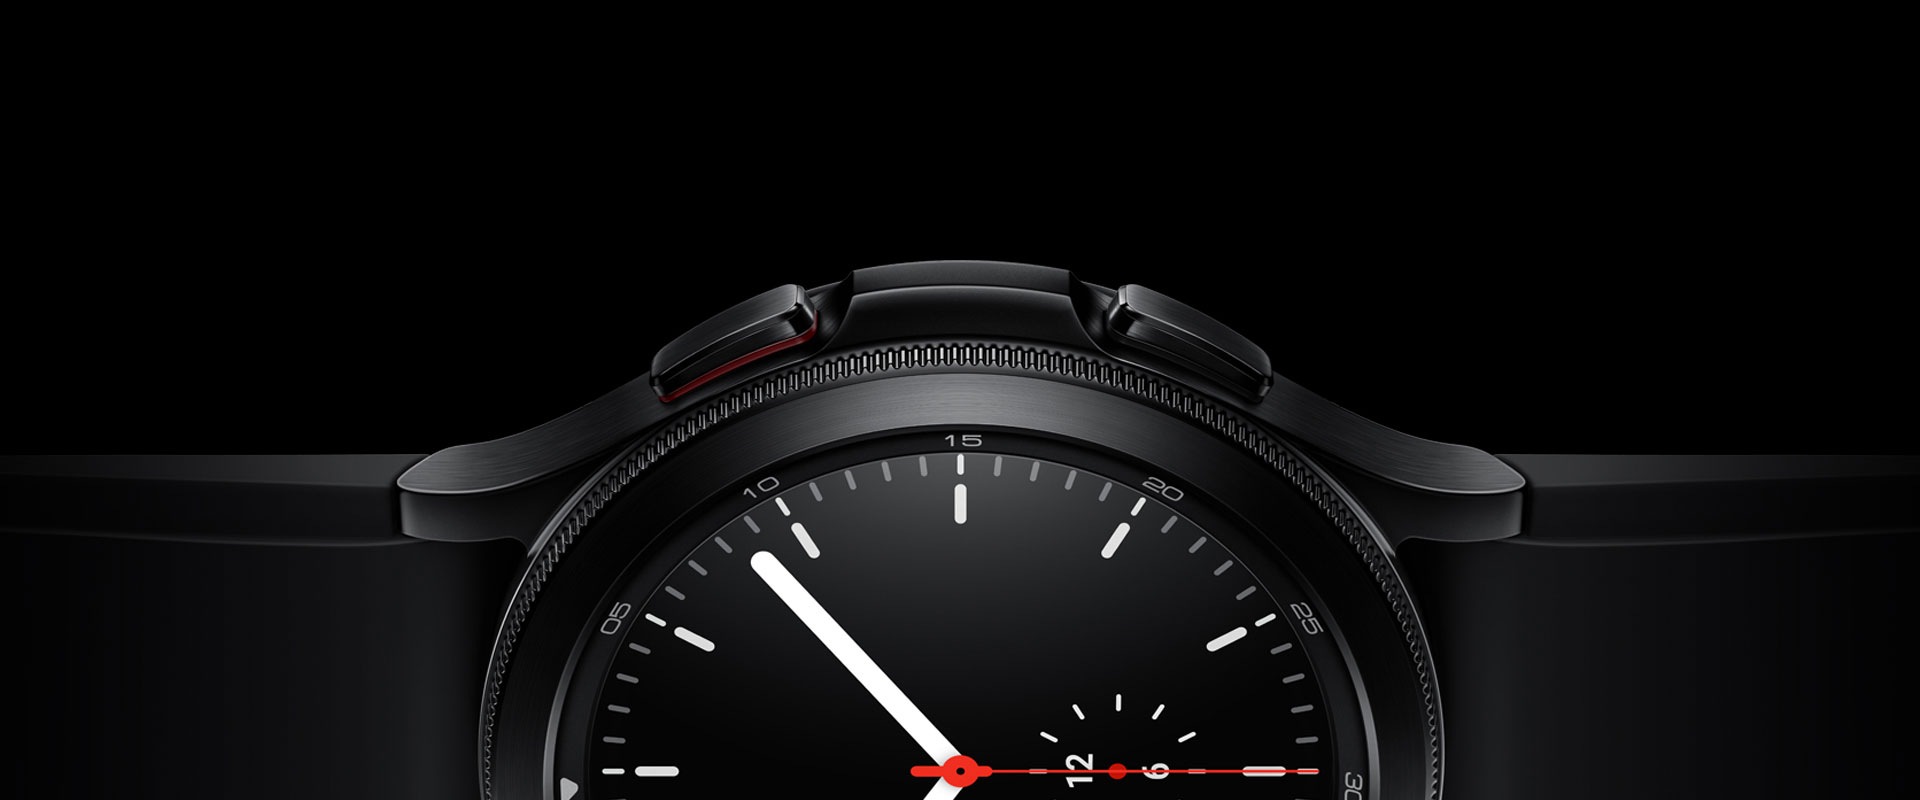 Половина сторони годинника обличчя чорної Galaxy Watch4 Classic - це чудово, зосереджуючись на його рамці, матеріалах та простому екрані годинника, який показує час.